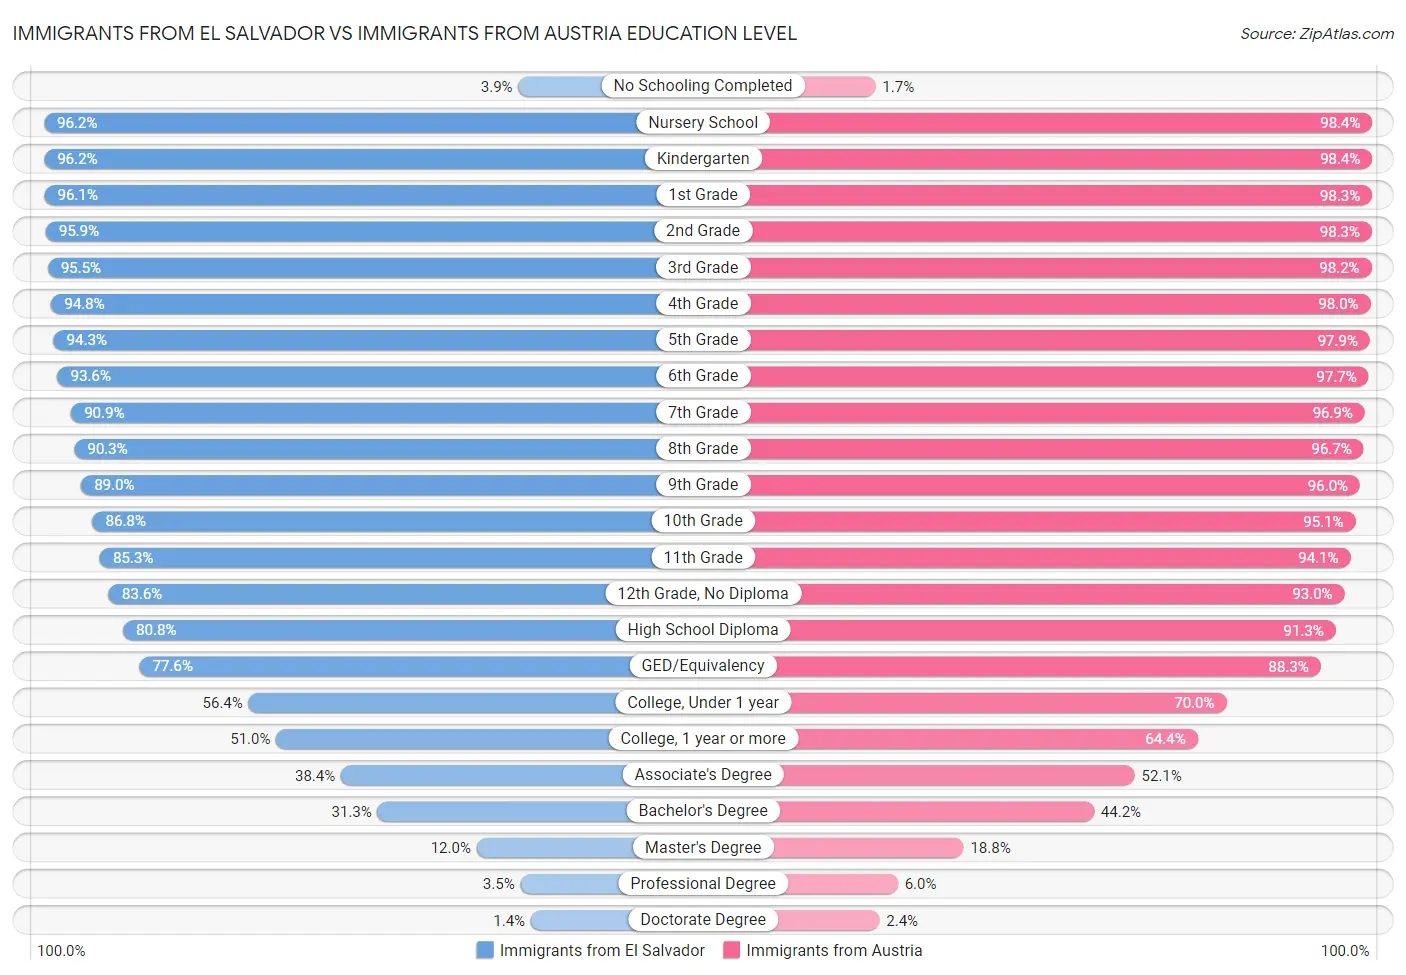 Immigrants from El Salvador vs Immigrants from Austria Education Level